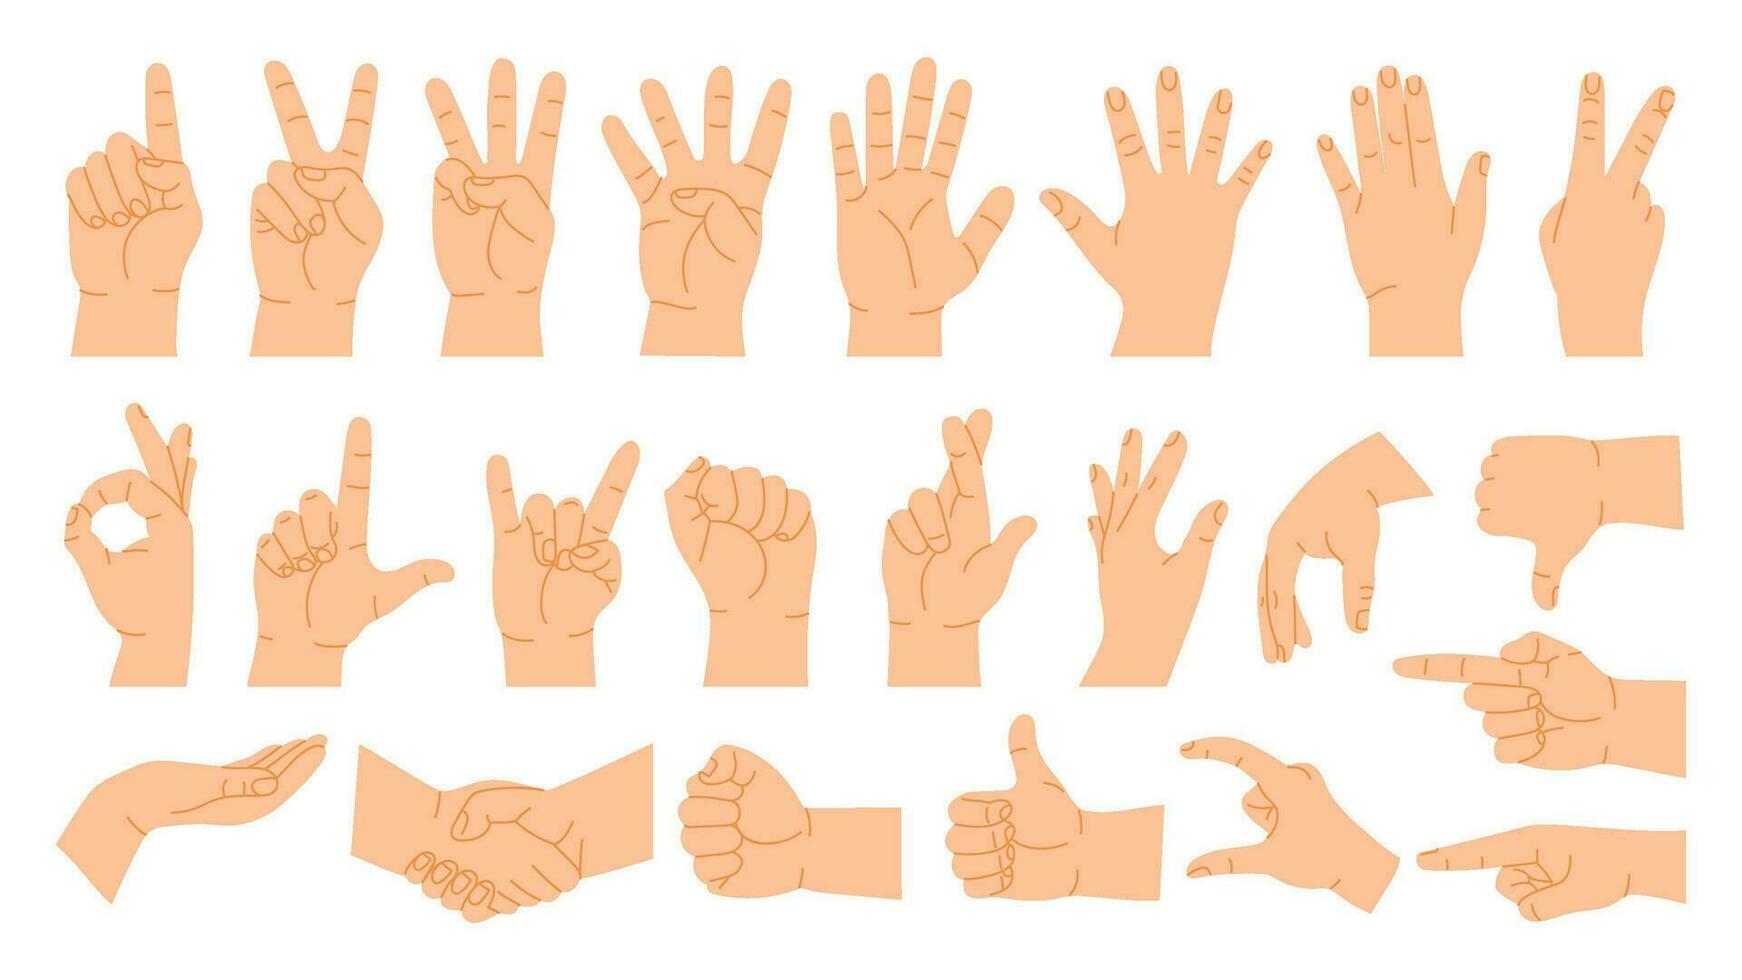 manos posa dibujos animados mano gestos contar en dedos, señalando, apretón de manos, pulgar arriba me gusta y disgusto. humano palma vector ilustración conjunto